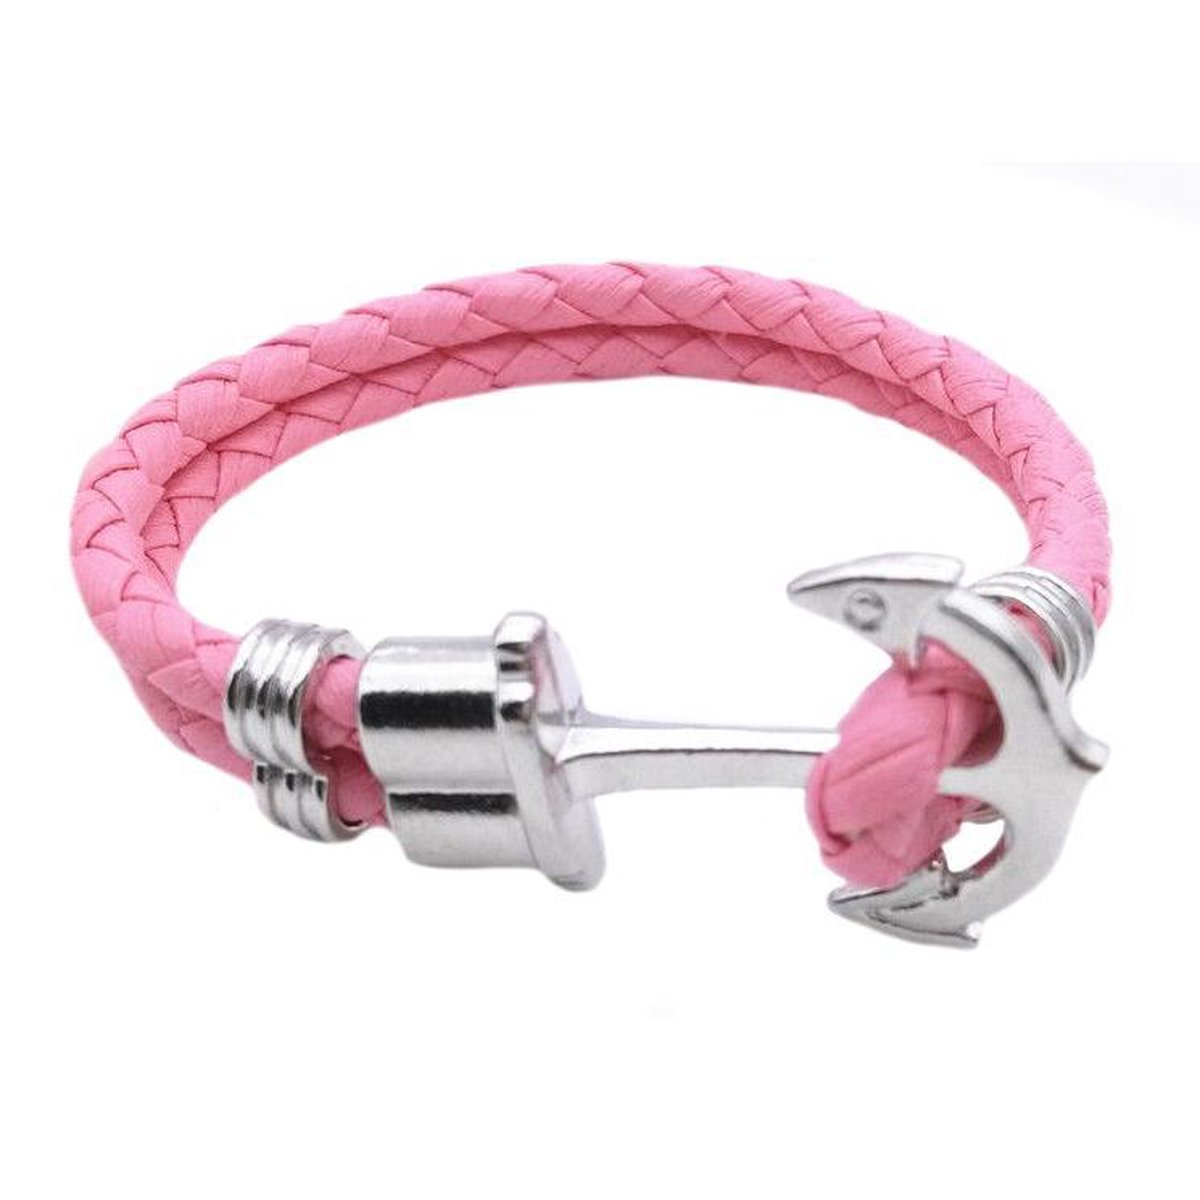 Roze vrouwen armband met anker